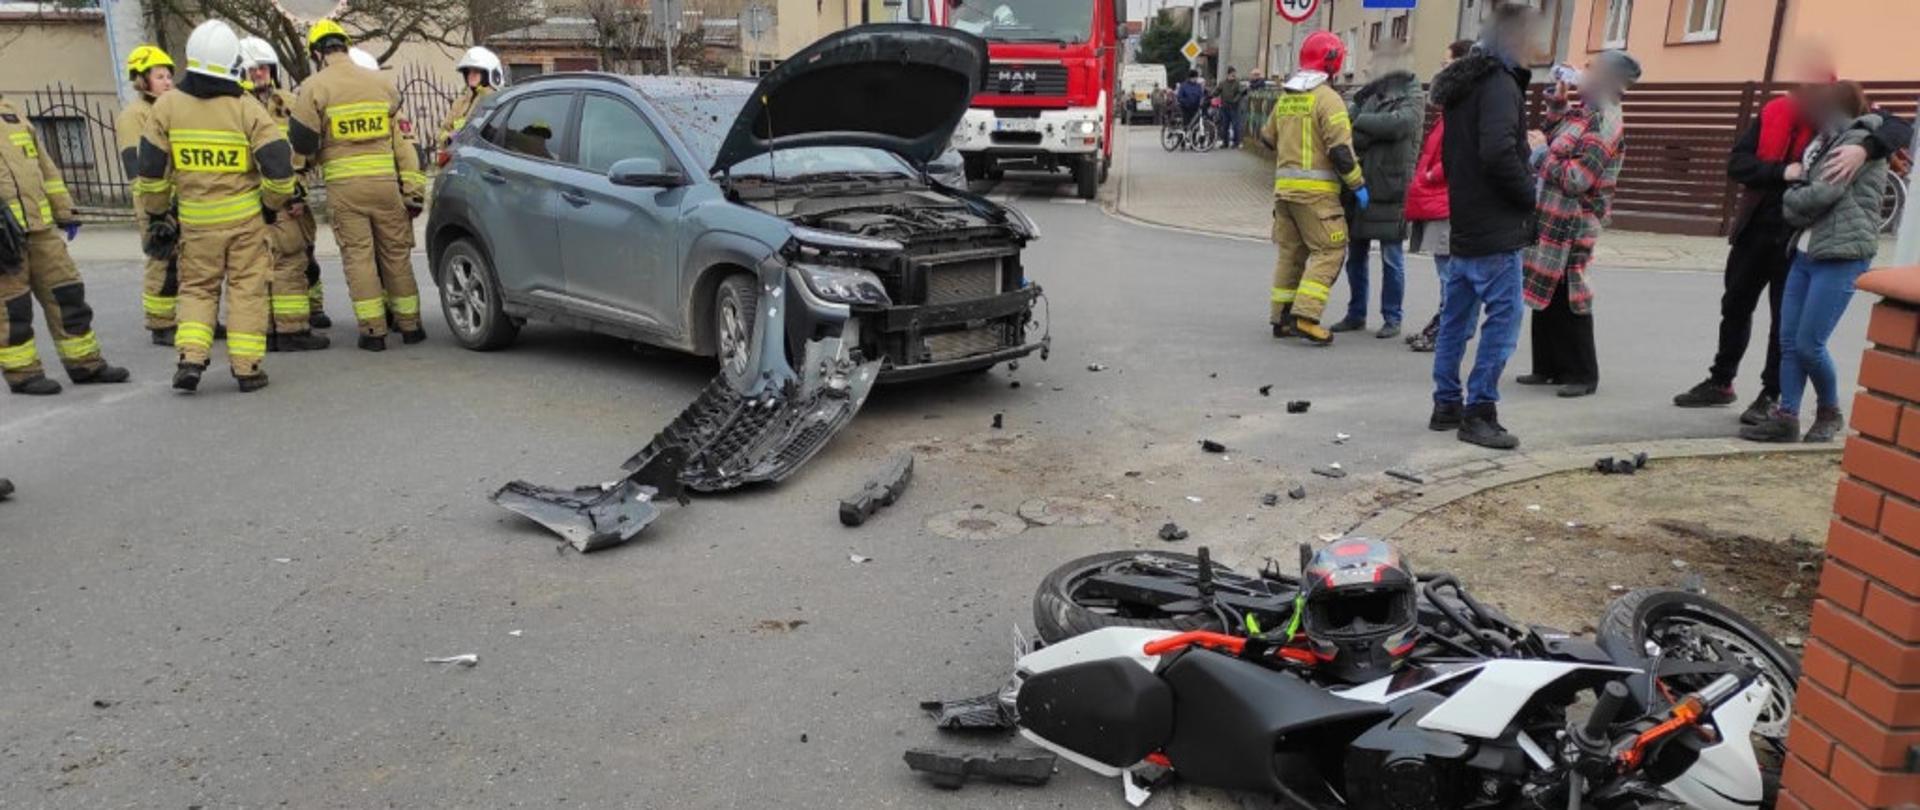 Zdjęcie przedstawia samochód osobowy i motocykl po zderzeniu na środku skrzyżowania. Przód samochodu uszkodzony, motocykl leży na chodniku. Po prawej stronie stoją świadkowie, po lewej stronie strażacy. Z tyłu wóz straży pożarnej. 